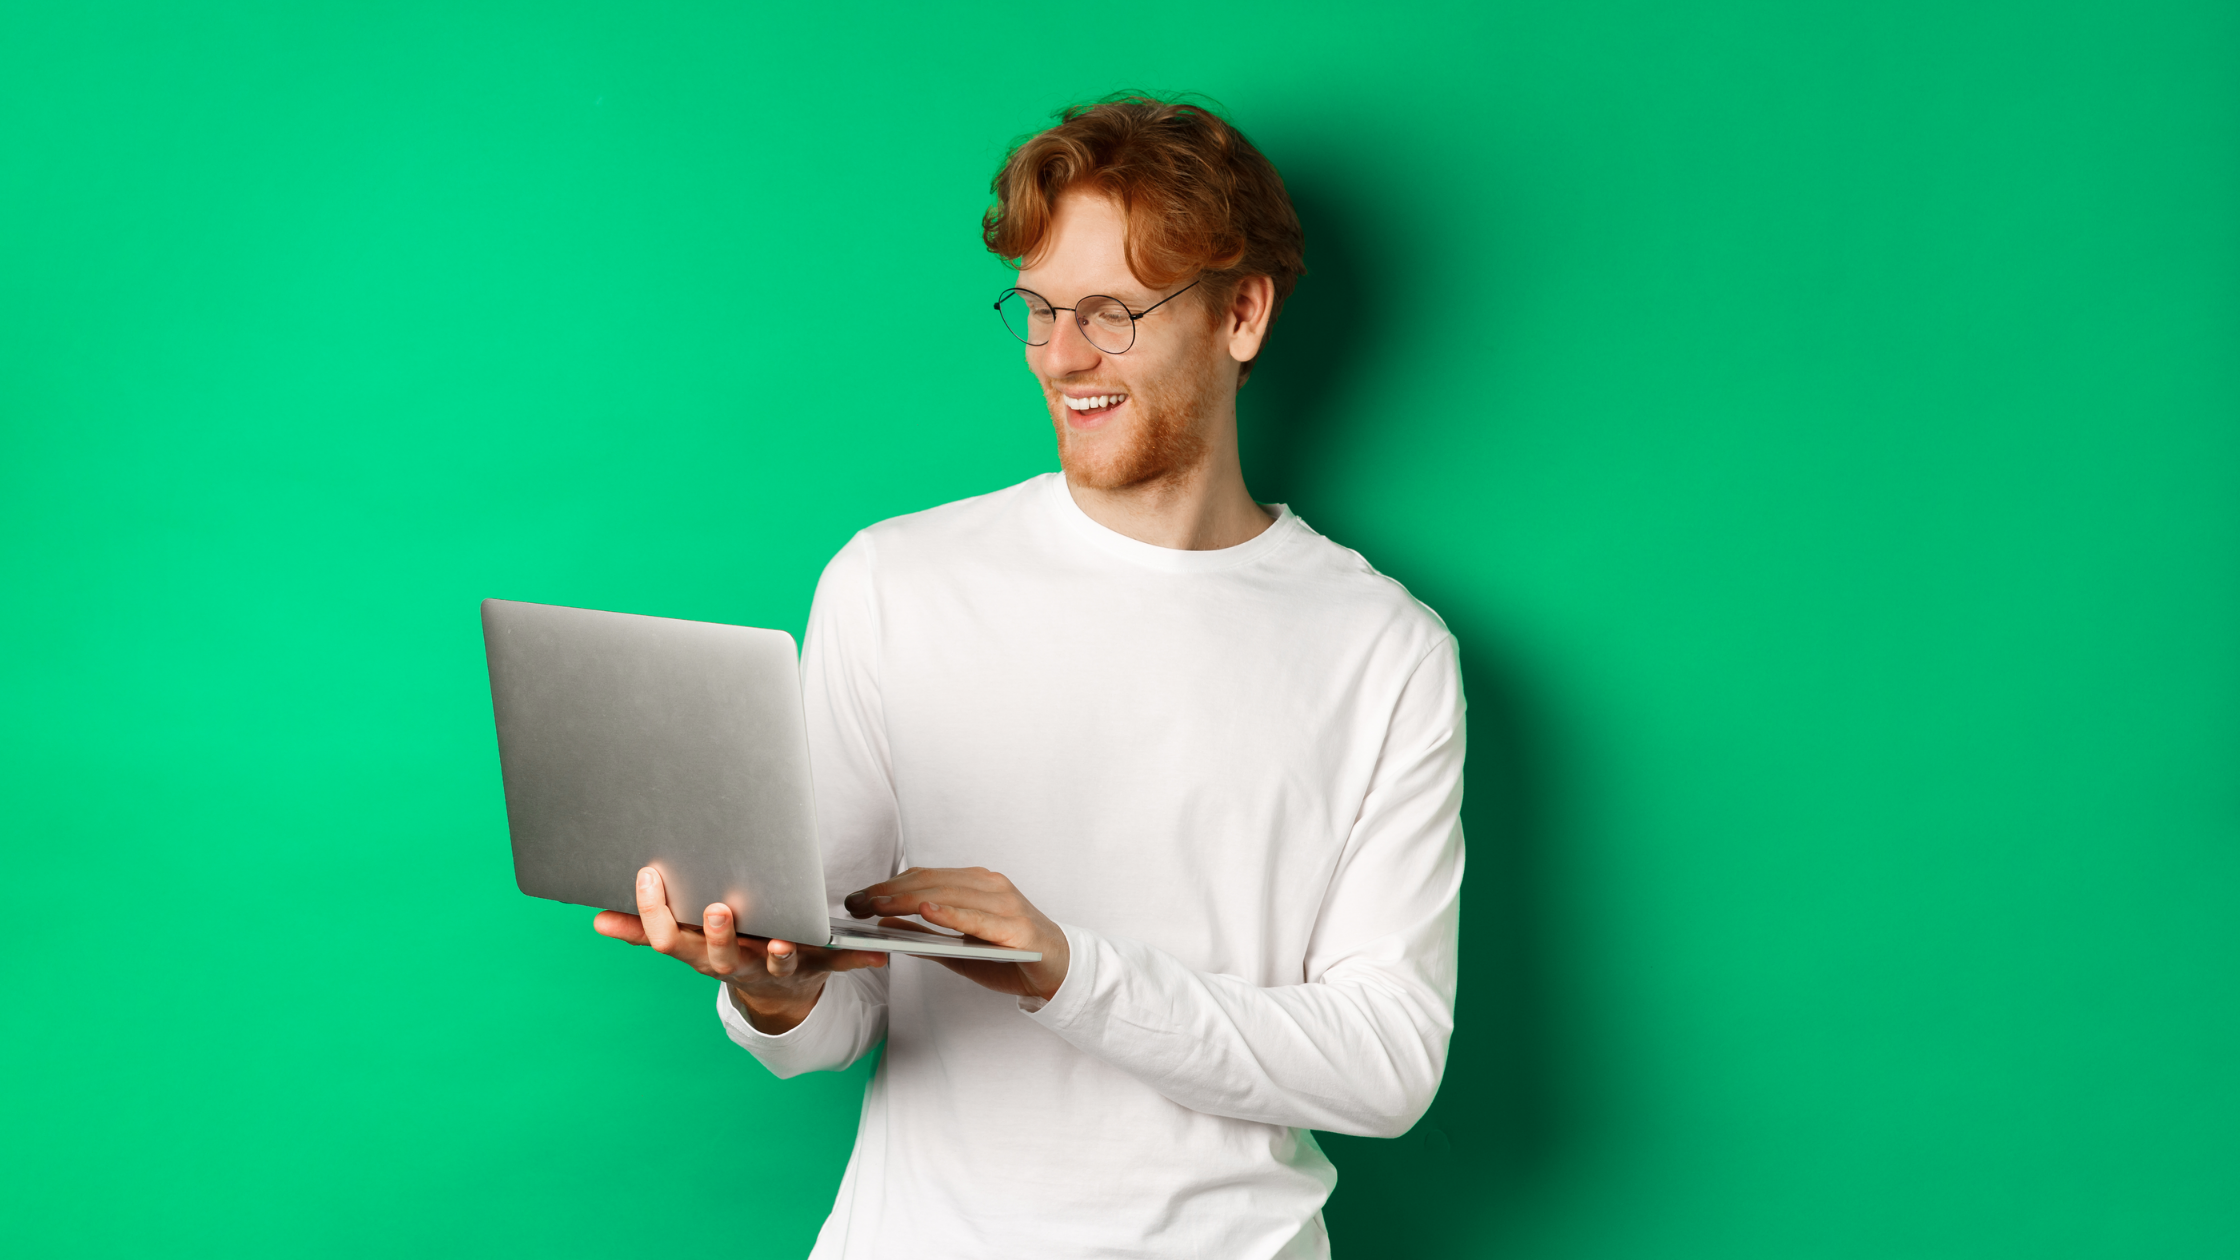 homme qui rigole avec un ordinateur sur un fond vert